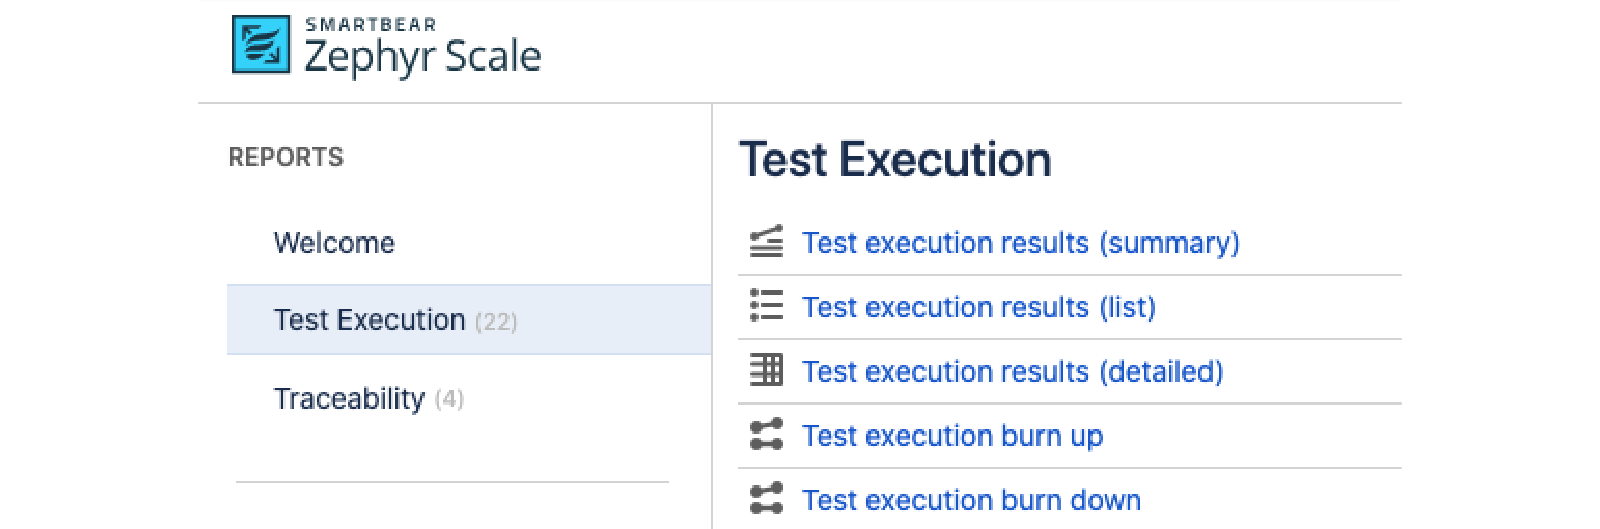 Вкладка Test Execution (Выполнение тестирования) в Zephyr Scale